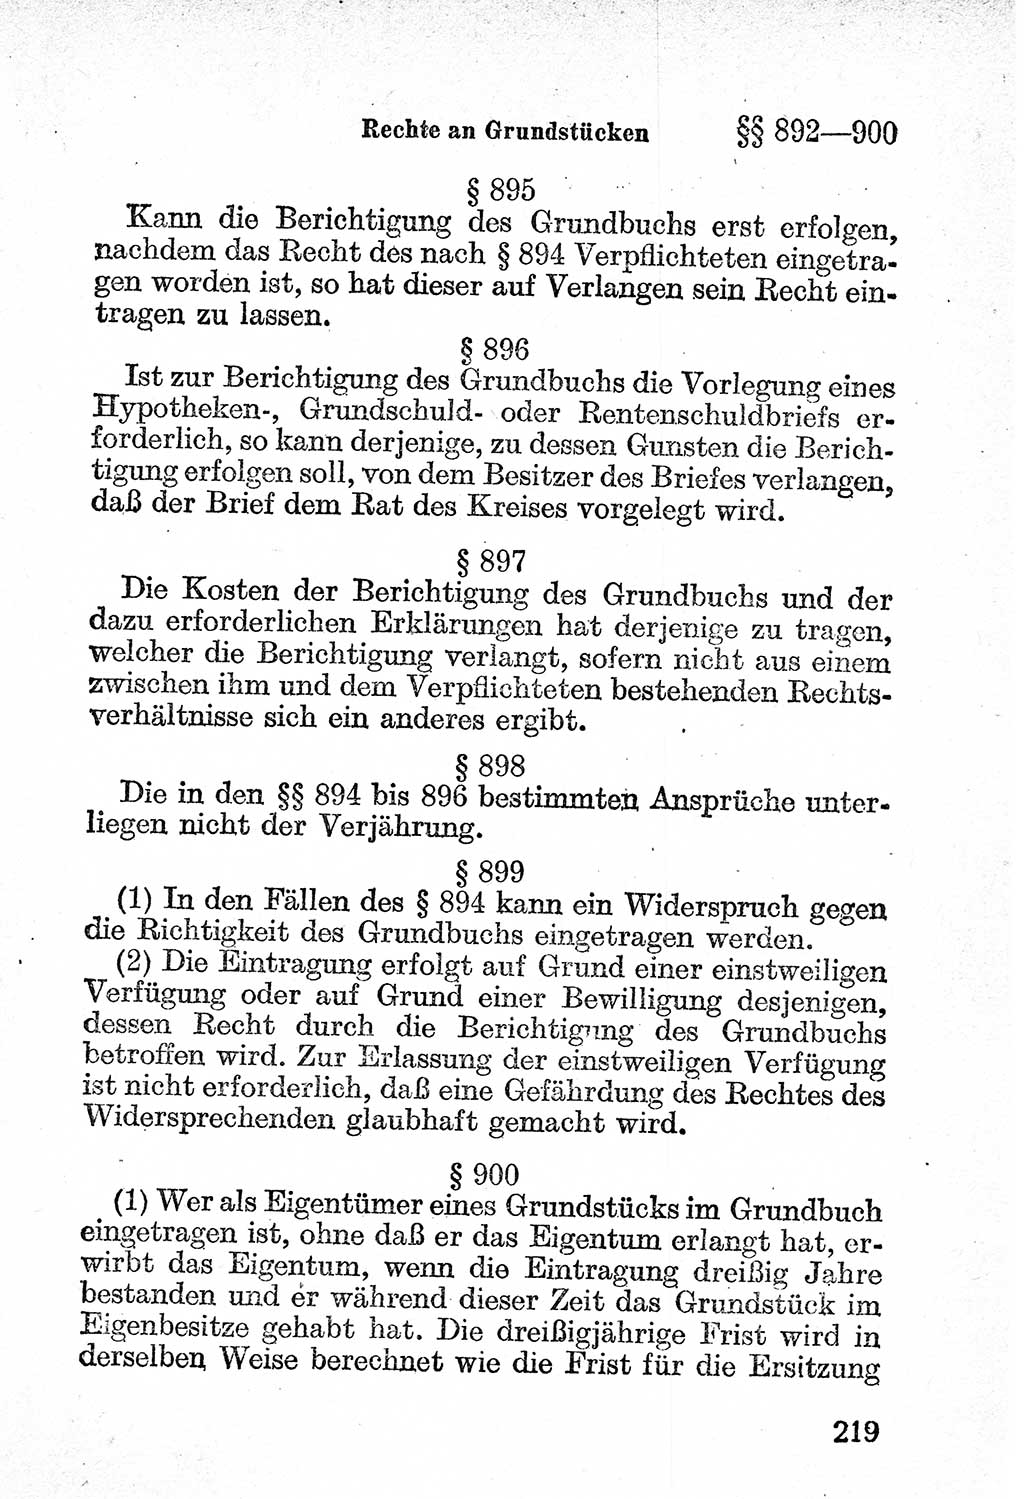 Bürgerliches Gesetzbuch (BGB) nebst wichtigen Nebengesetzen [Deutsche Demokratische Republik (DDR)] 1956, Seite 219 (BGB Nebenges. DDR 1956, S. 219)